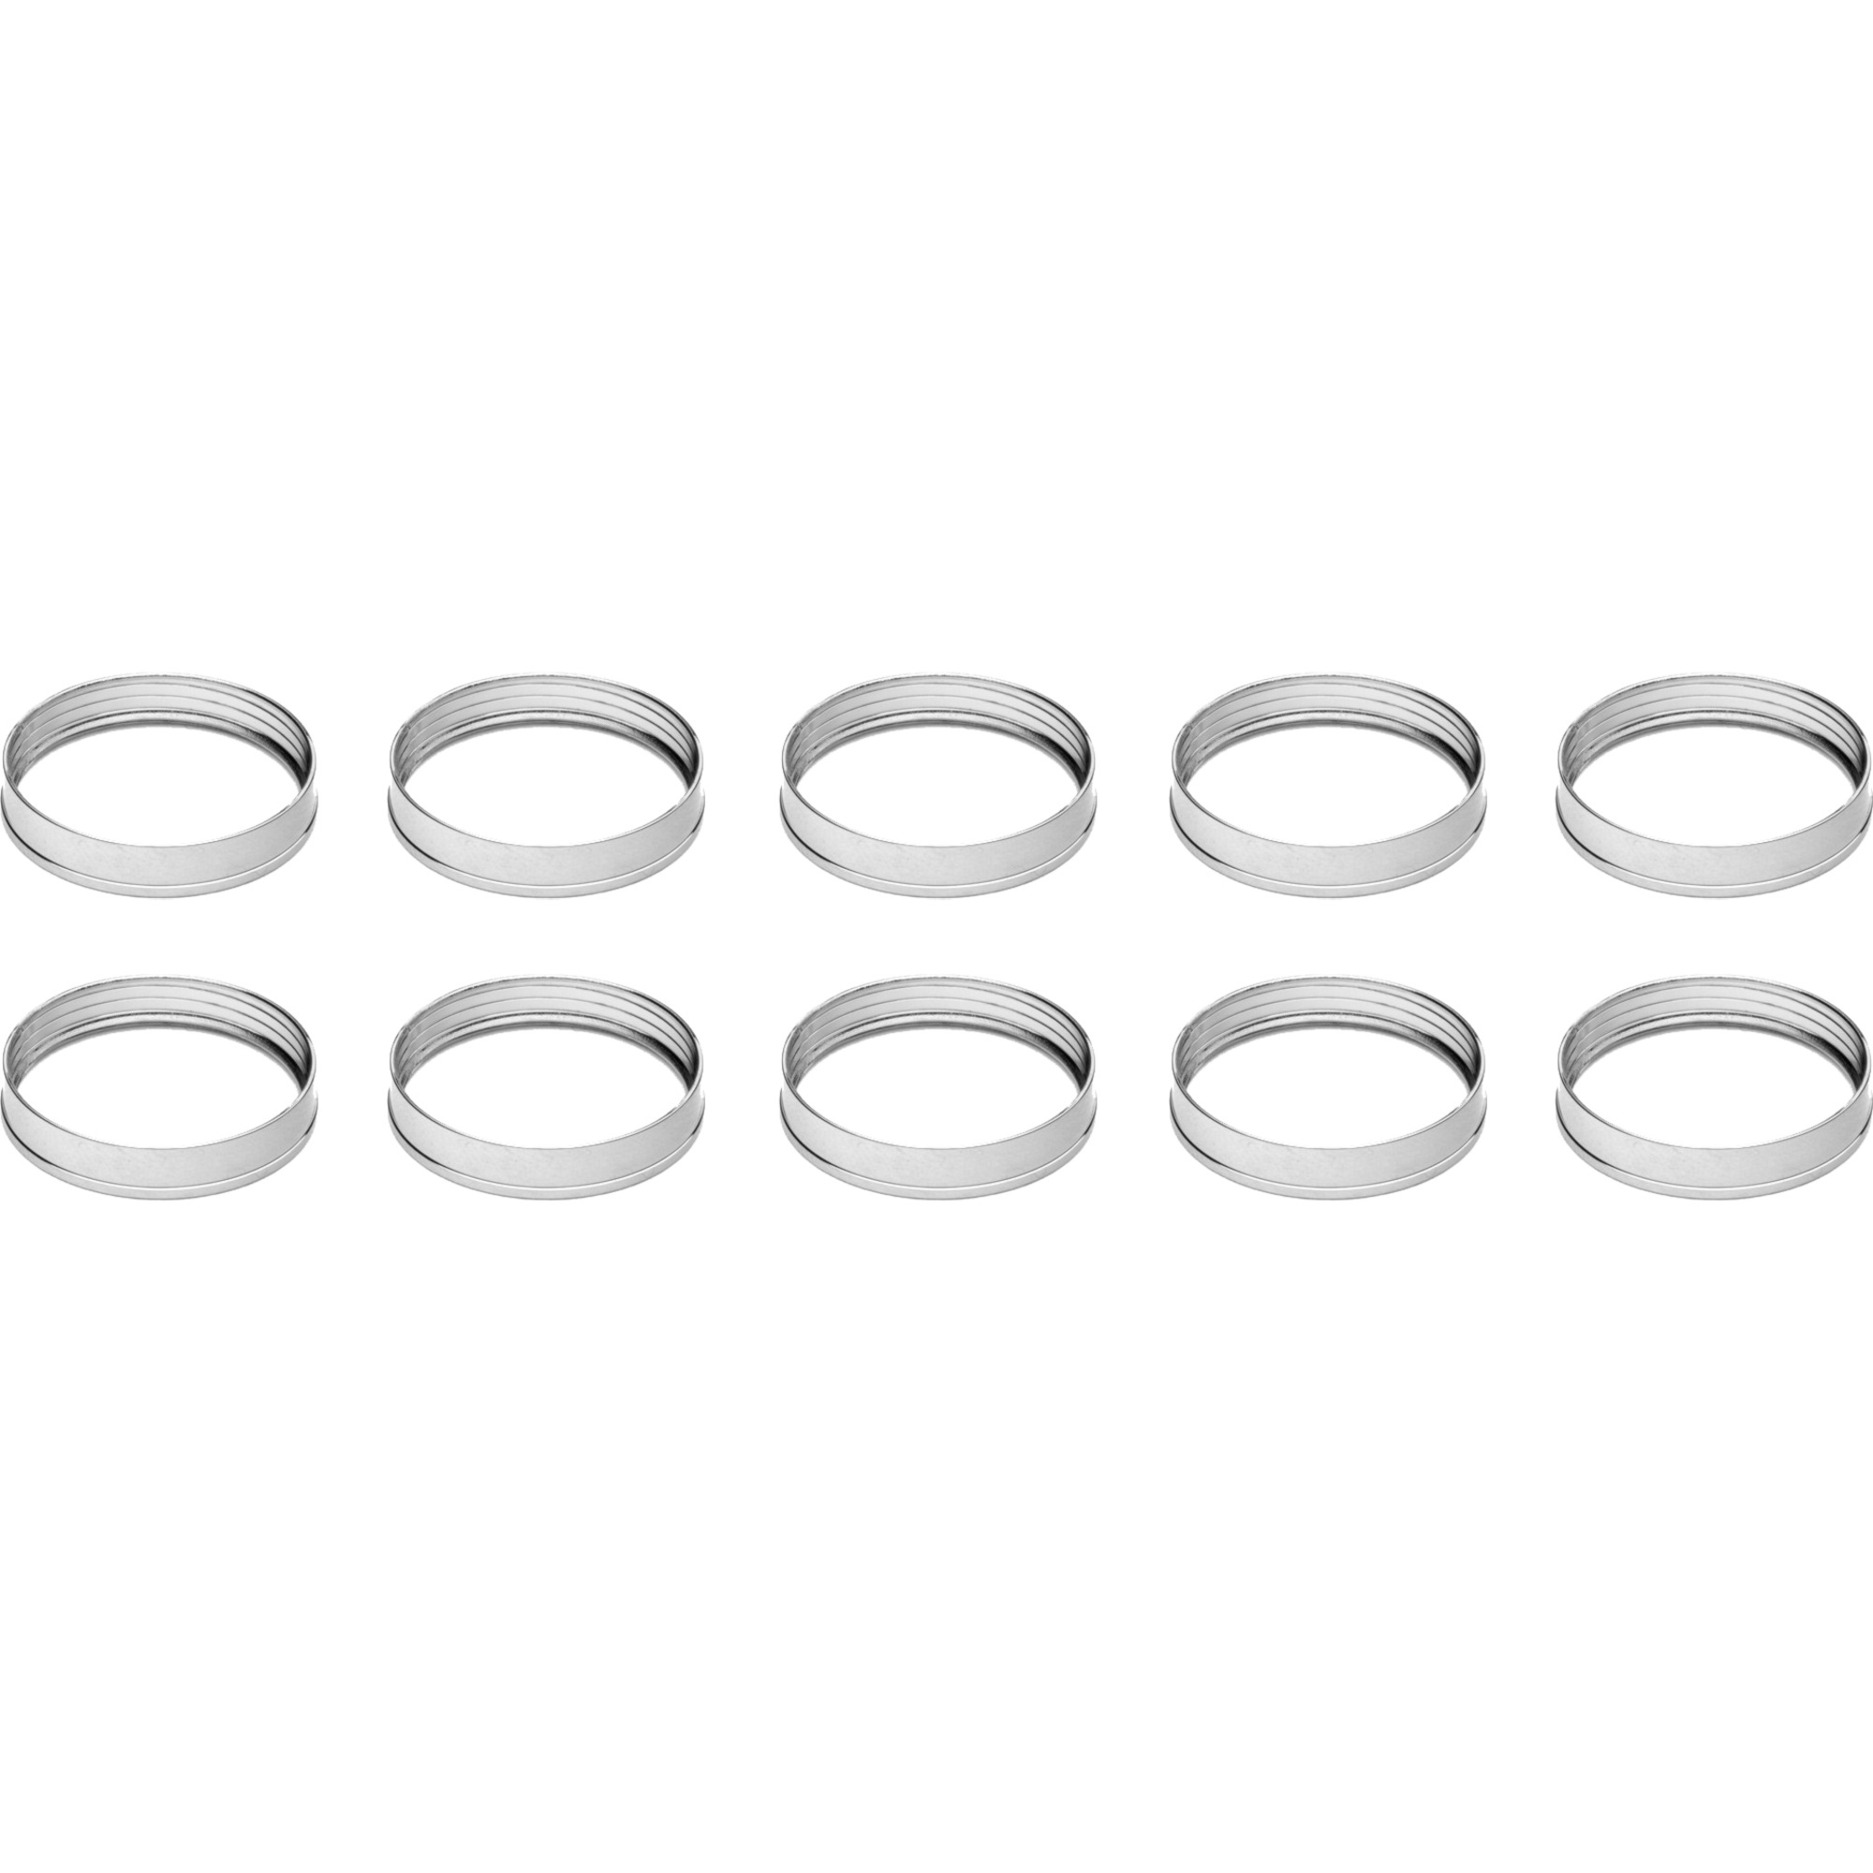 Image of Alternate - EK-Torque STC-10/16 Color Rings Pack - Nickel, Verbindung online einkaufen bei Alternate